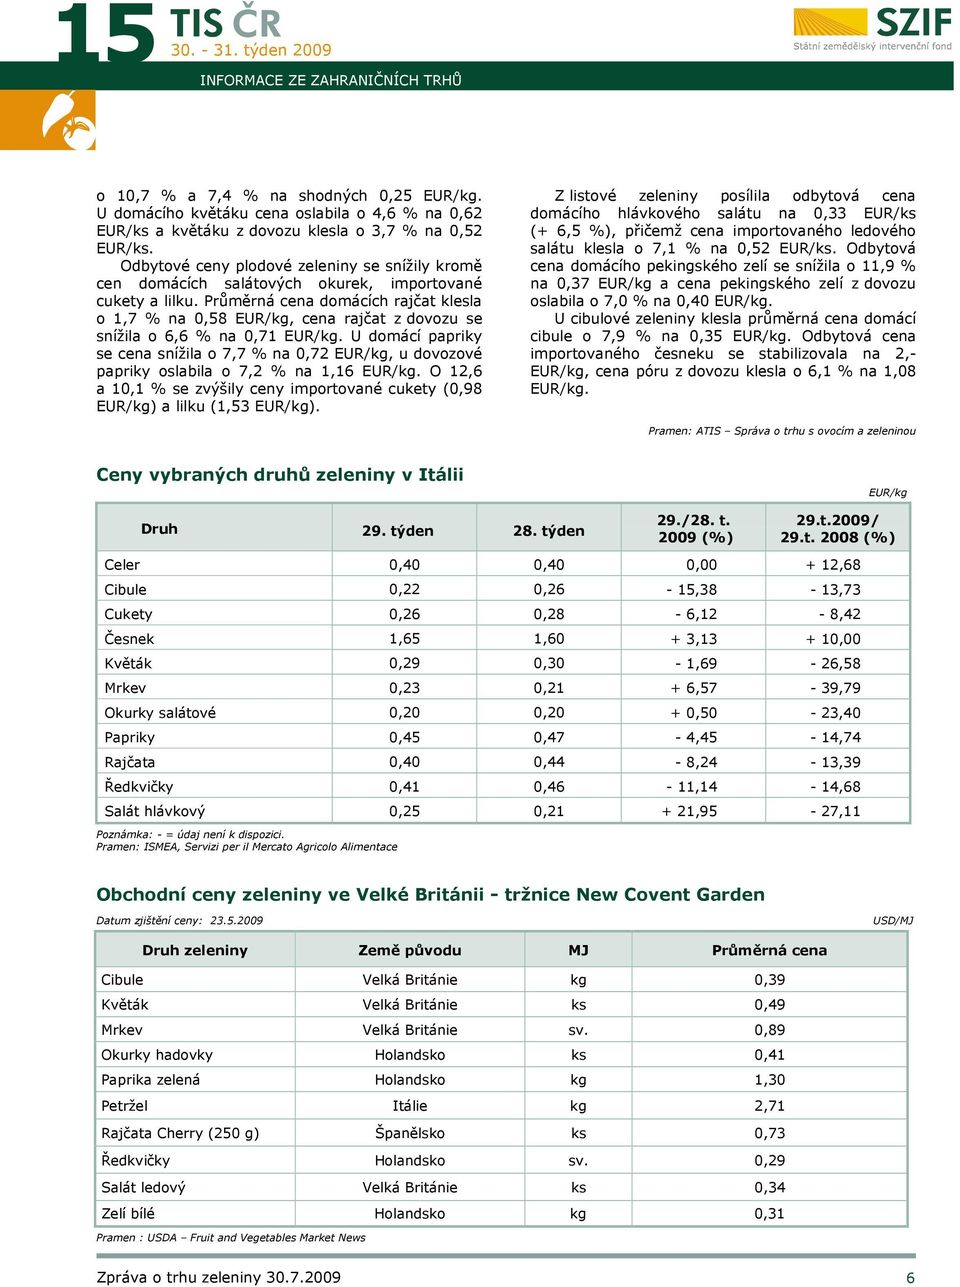 Průměrná cena domácích rajčat klesla o 1,7 % na 0,58 EUR/kg, cena rajčat z dovozu se snížila o 6,6 % na 0,71 EUR/kg.